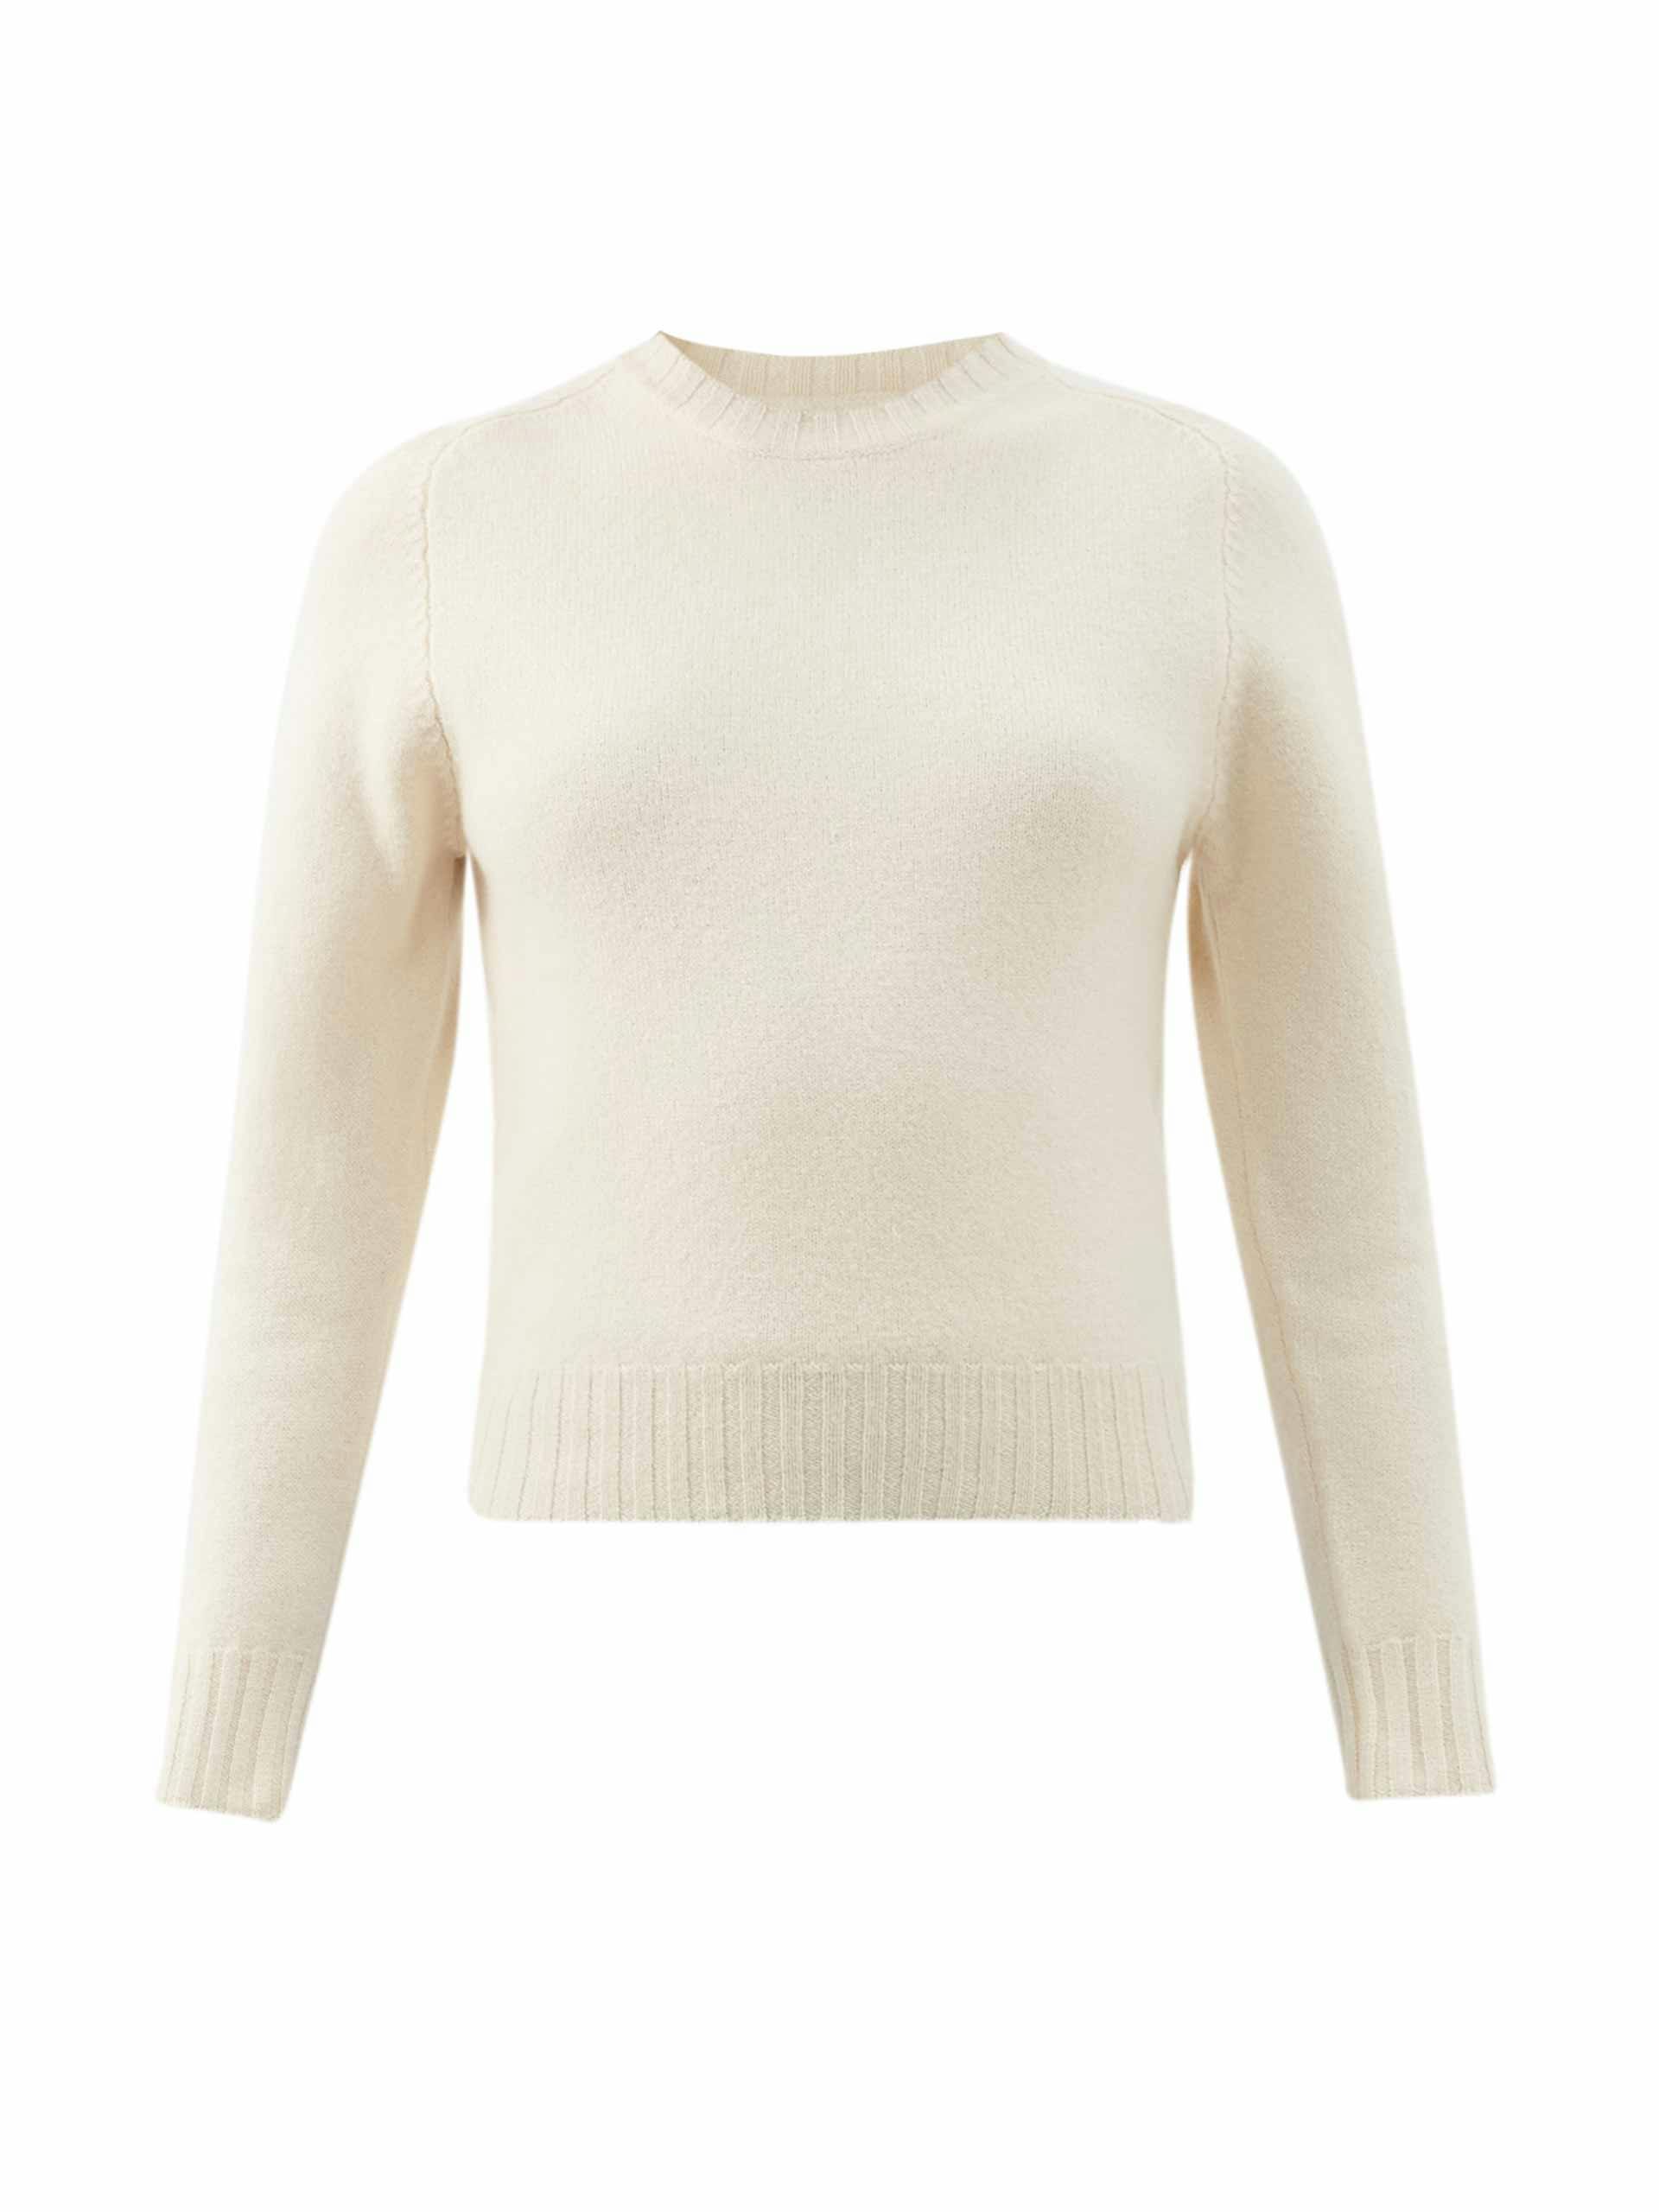 Netural merino sweater